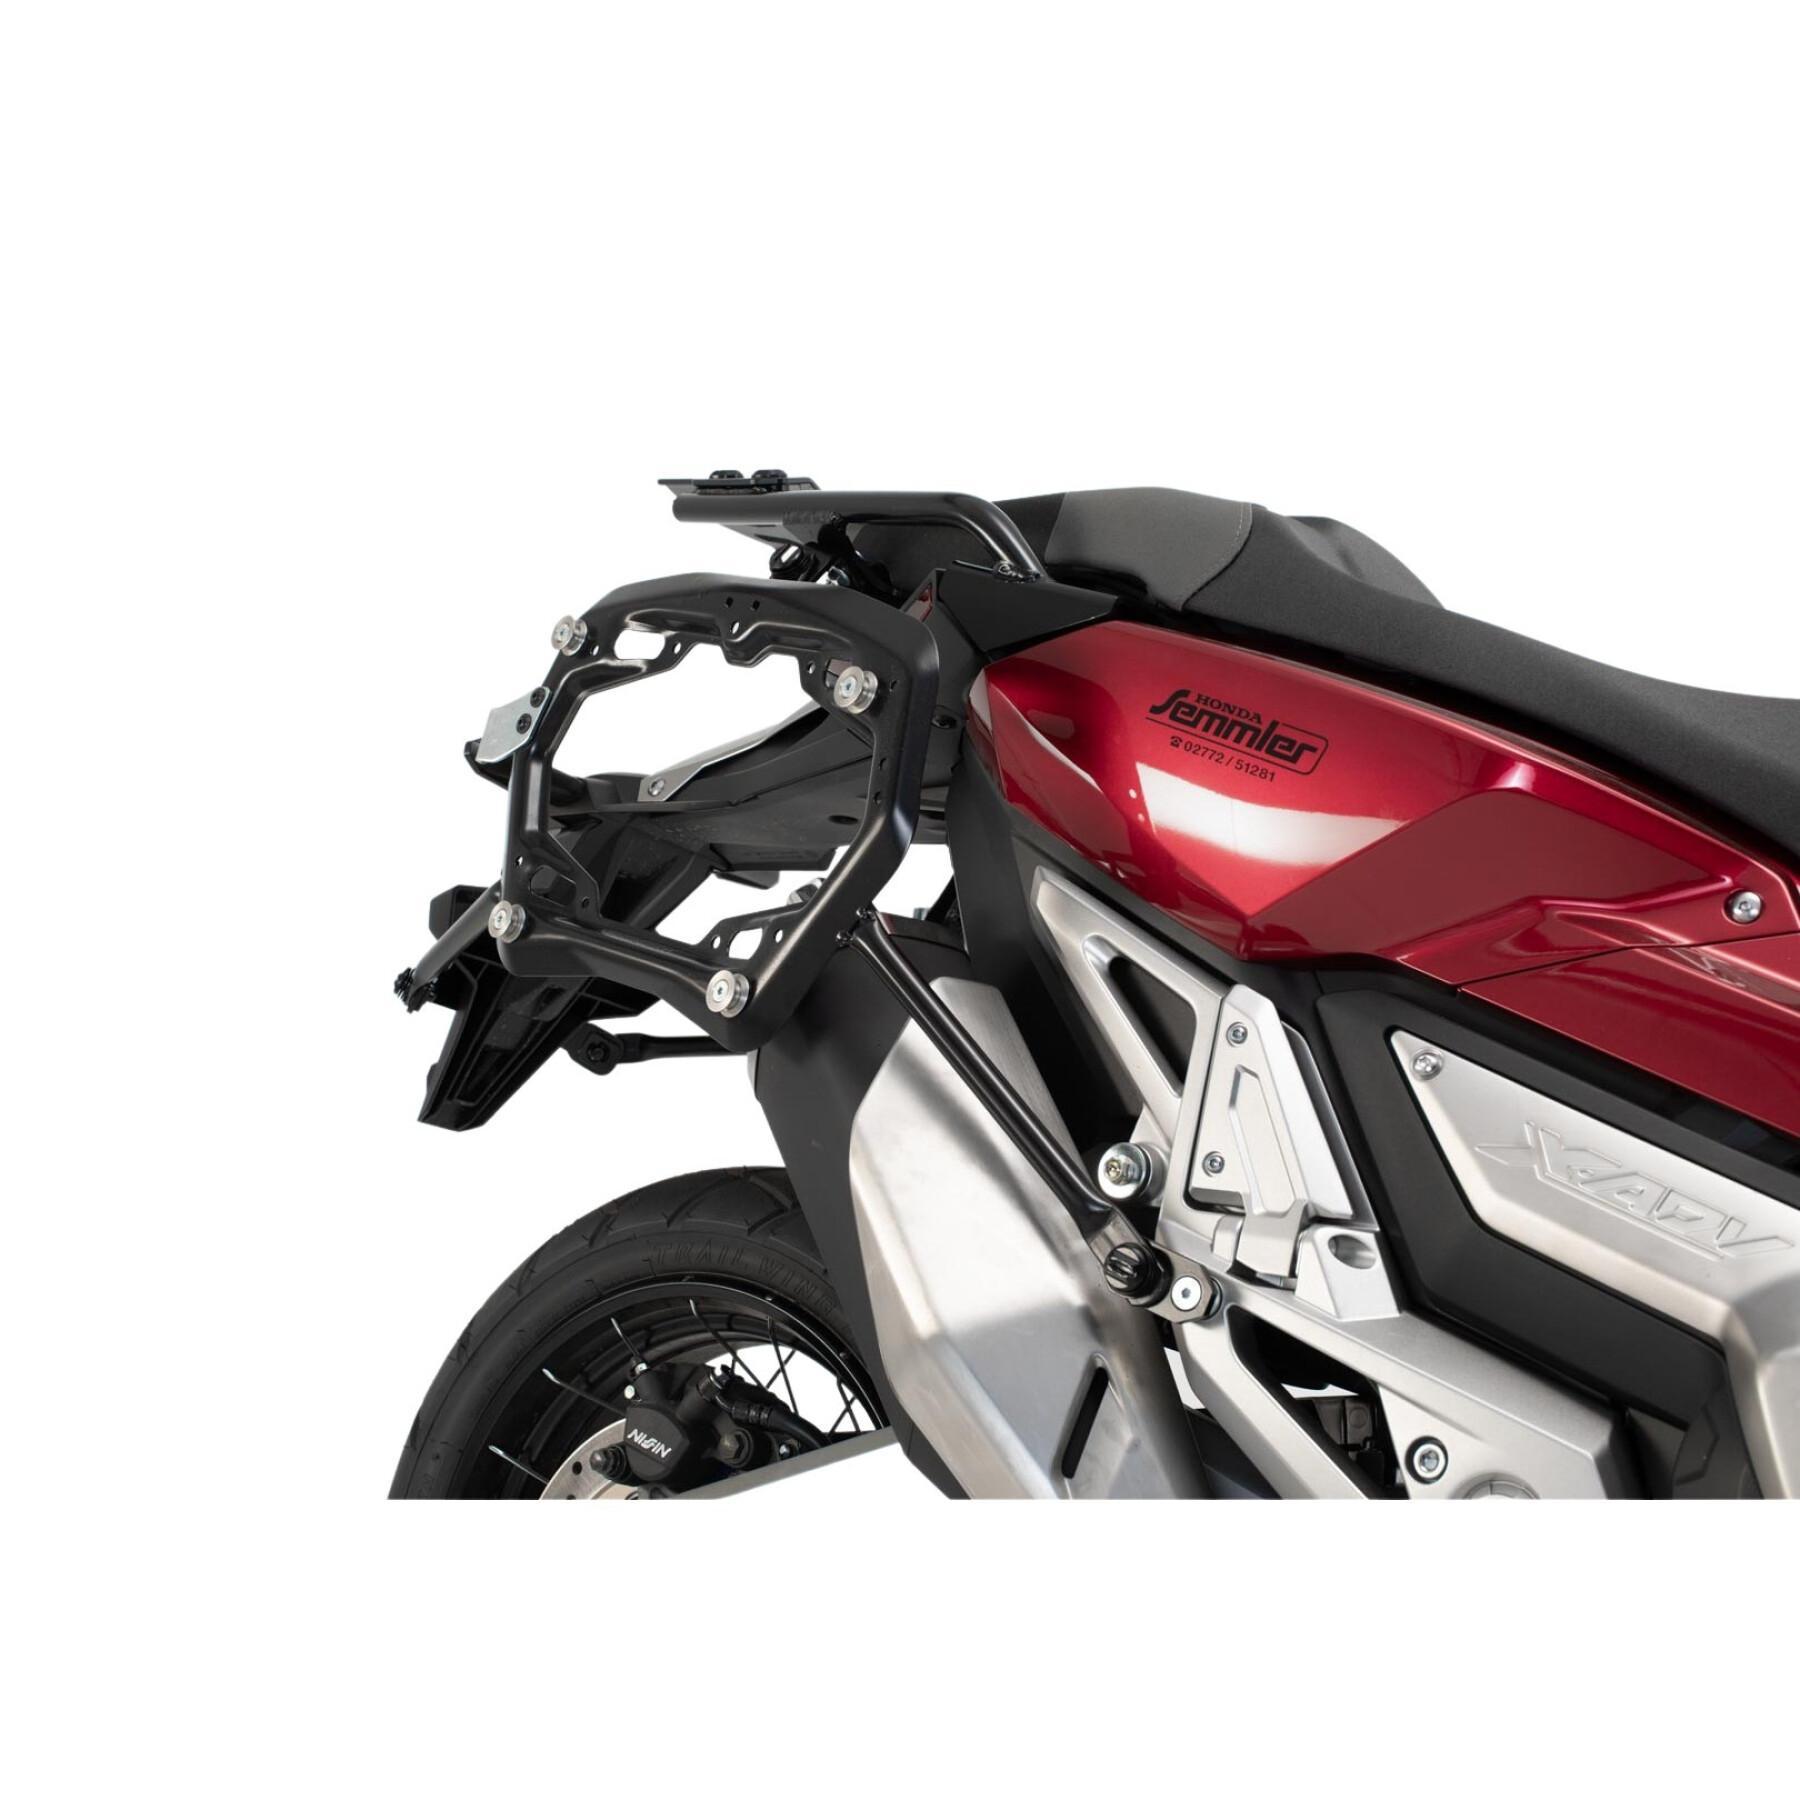 Suporte de mala lateral de motocicleta Sw-Motech Pro. Honda X-Adv (16-)